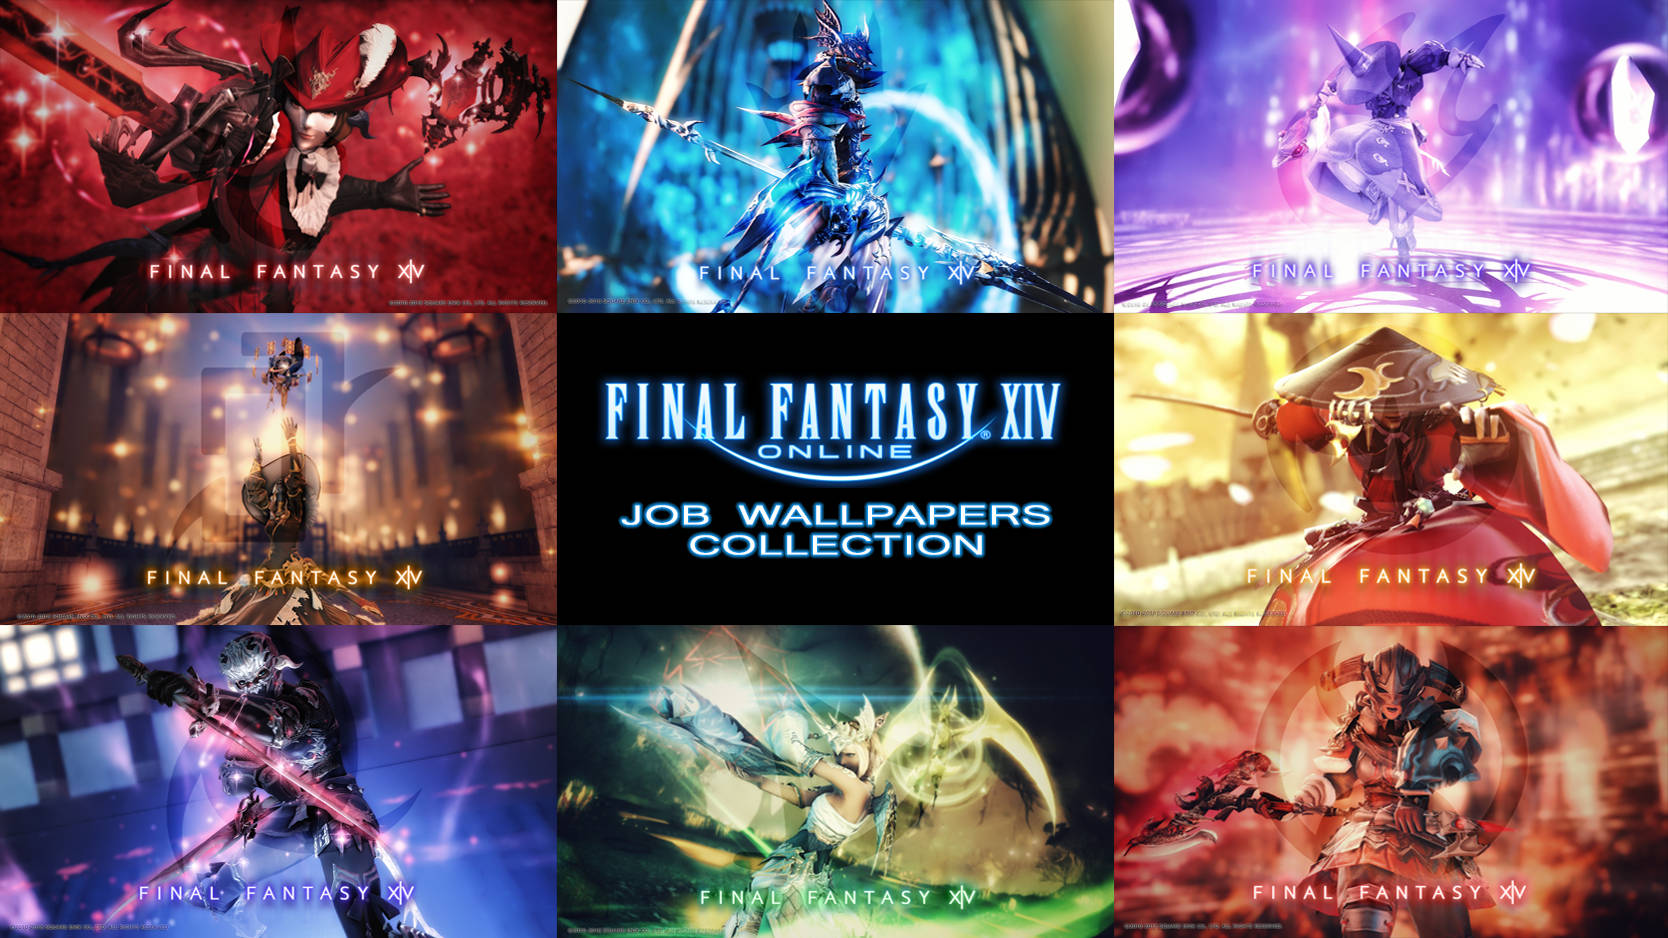 Entfesselnsie Ihr Wahres Potenzial Mit Der Job-sammlung In Final Fantasy 14. Wallpaper